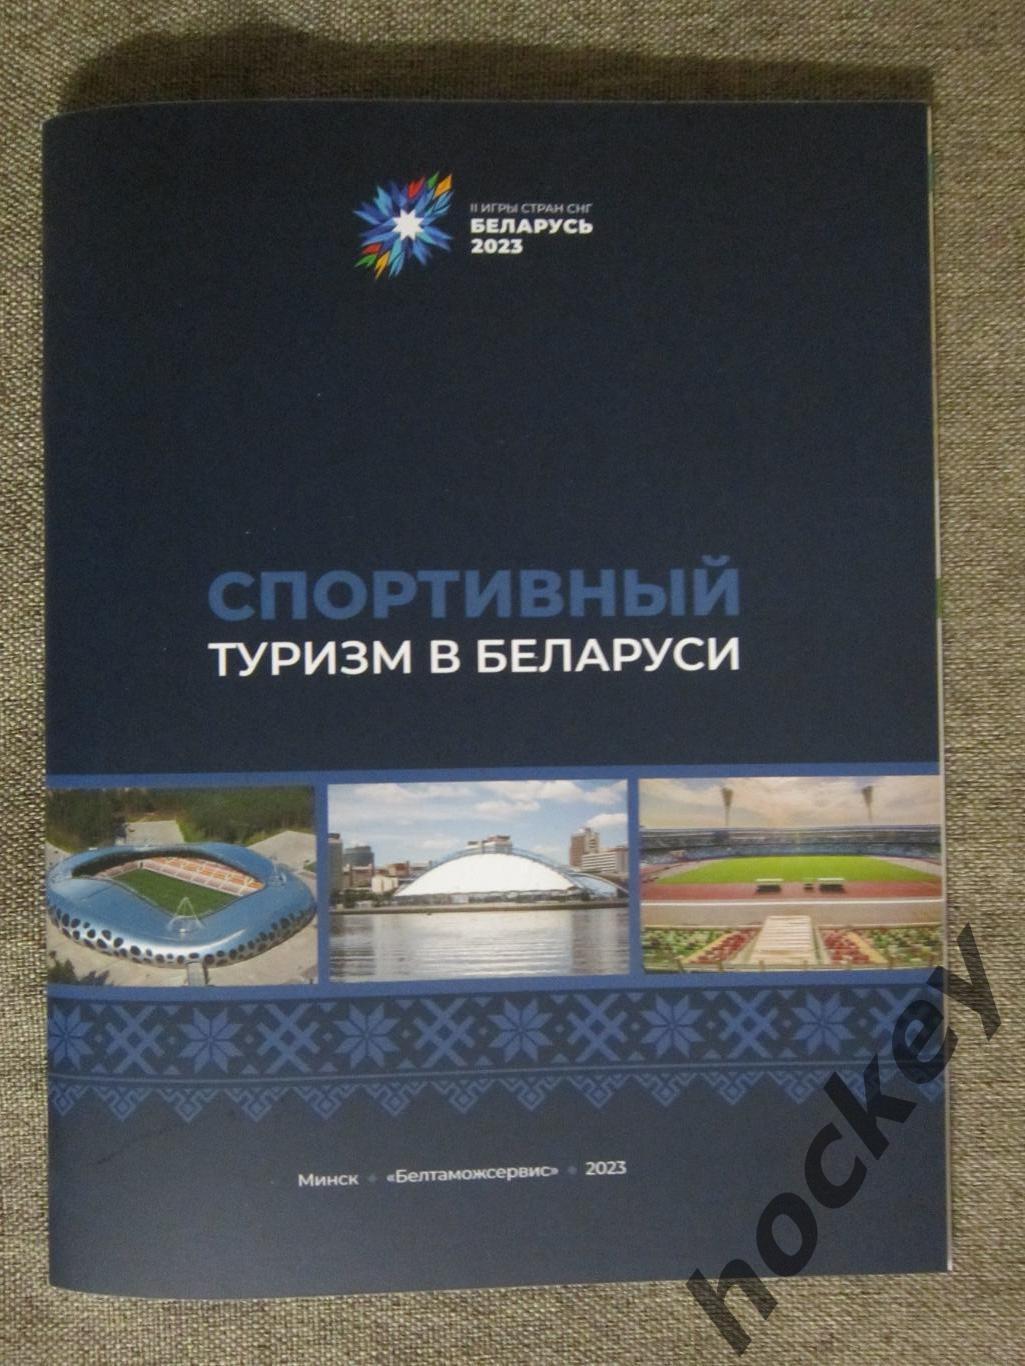 Спортивный туризм в Беларуси. Буклет (36 стр.). Все города, спортивные объекты